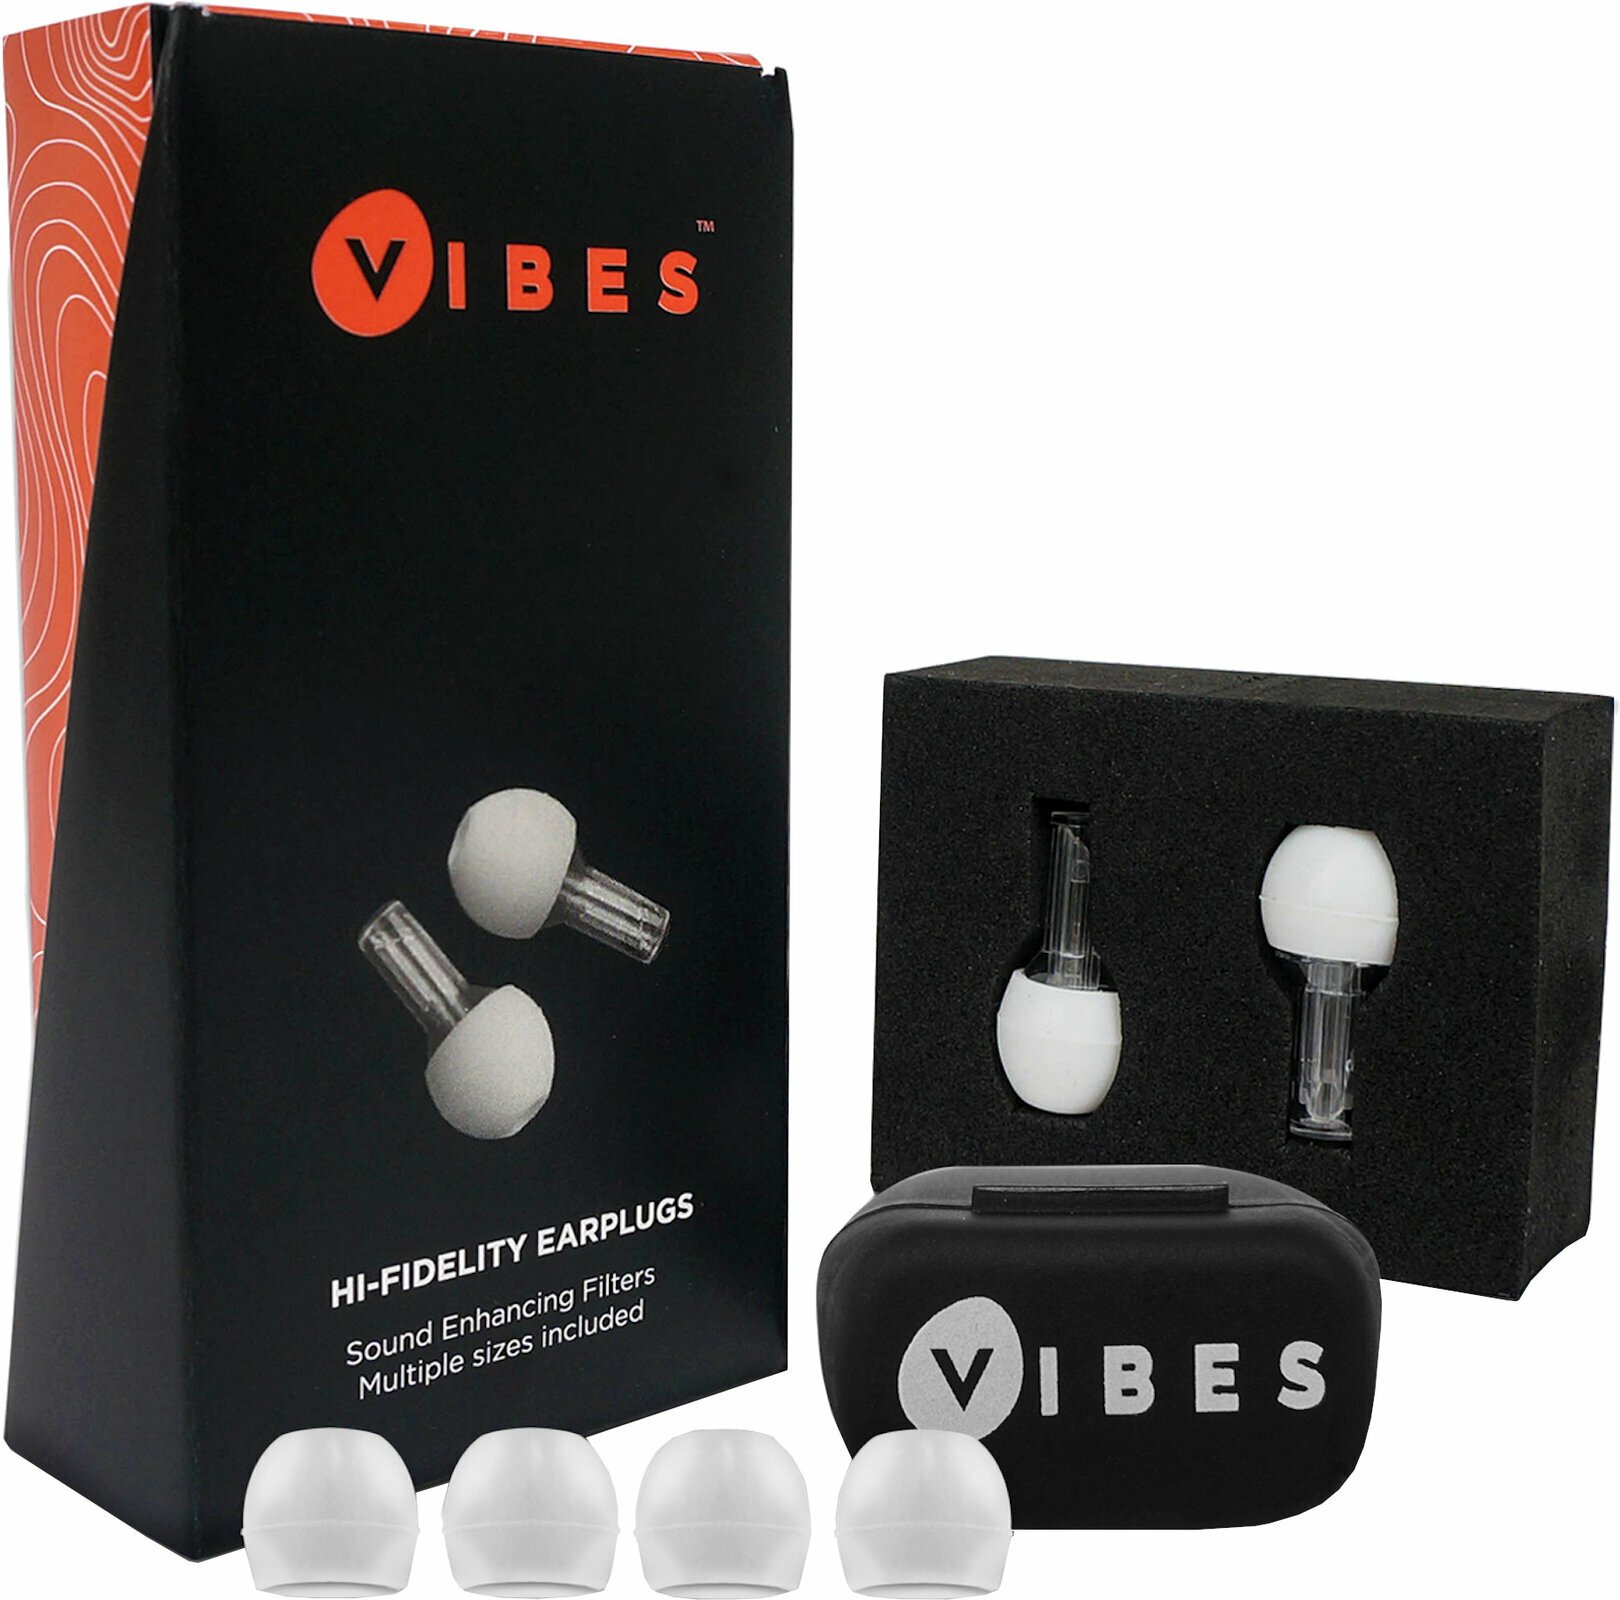 Chrániče sluchu Vibes Hi-Fidelity Earplugs Chrániče sluchu